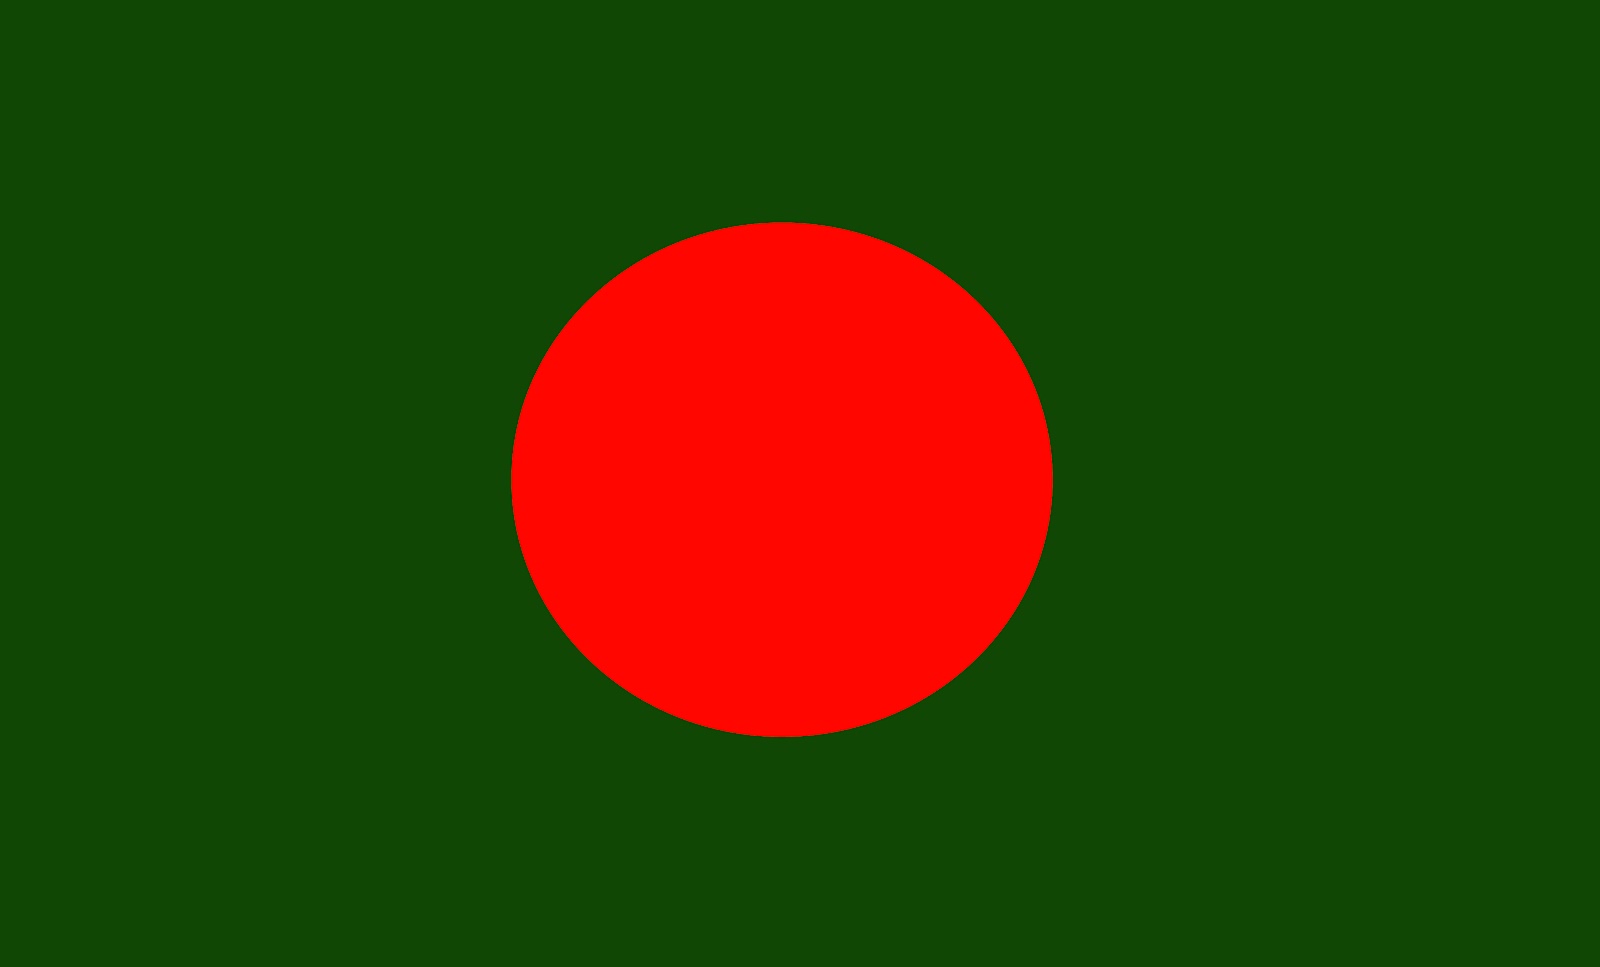 bangladesh flag wallpaper hd,verde,rosso,bandiera,cerchio,colorfulness